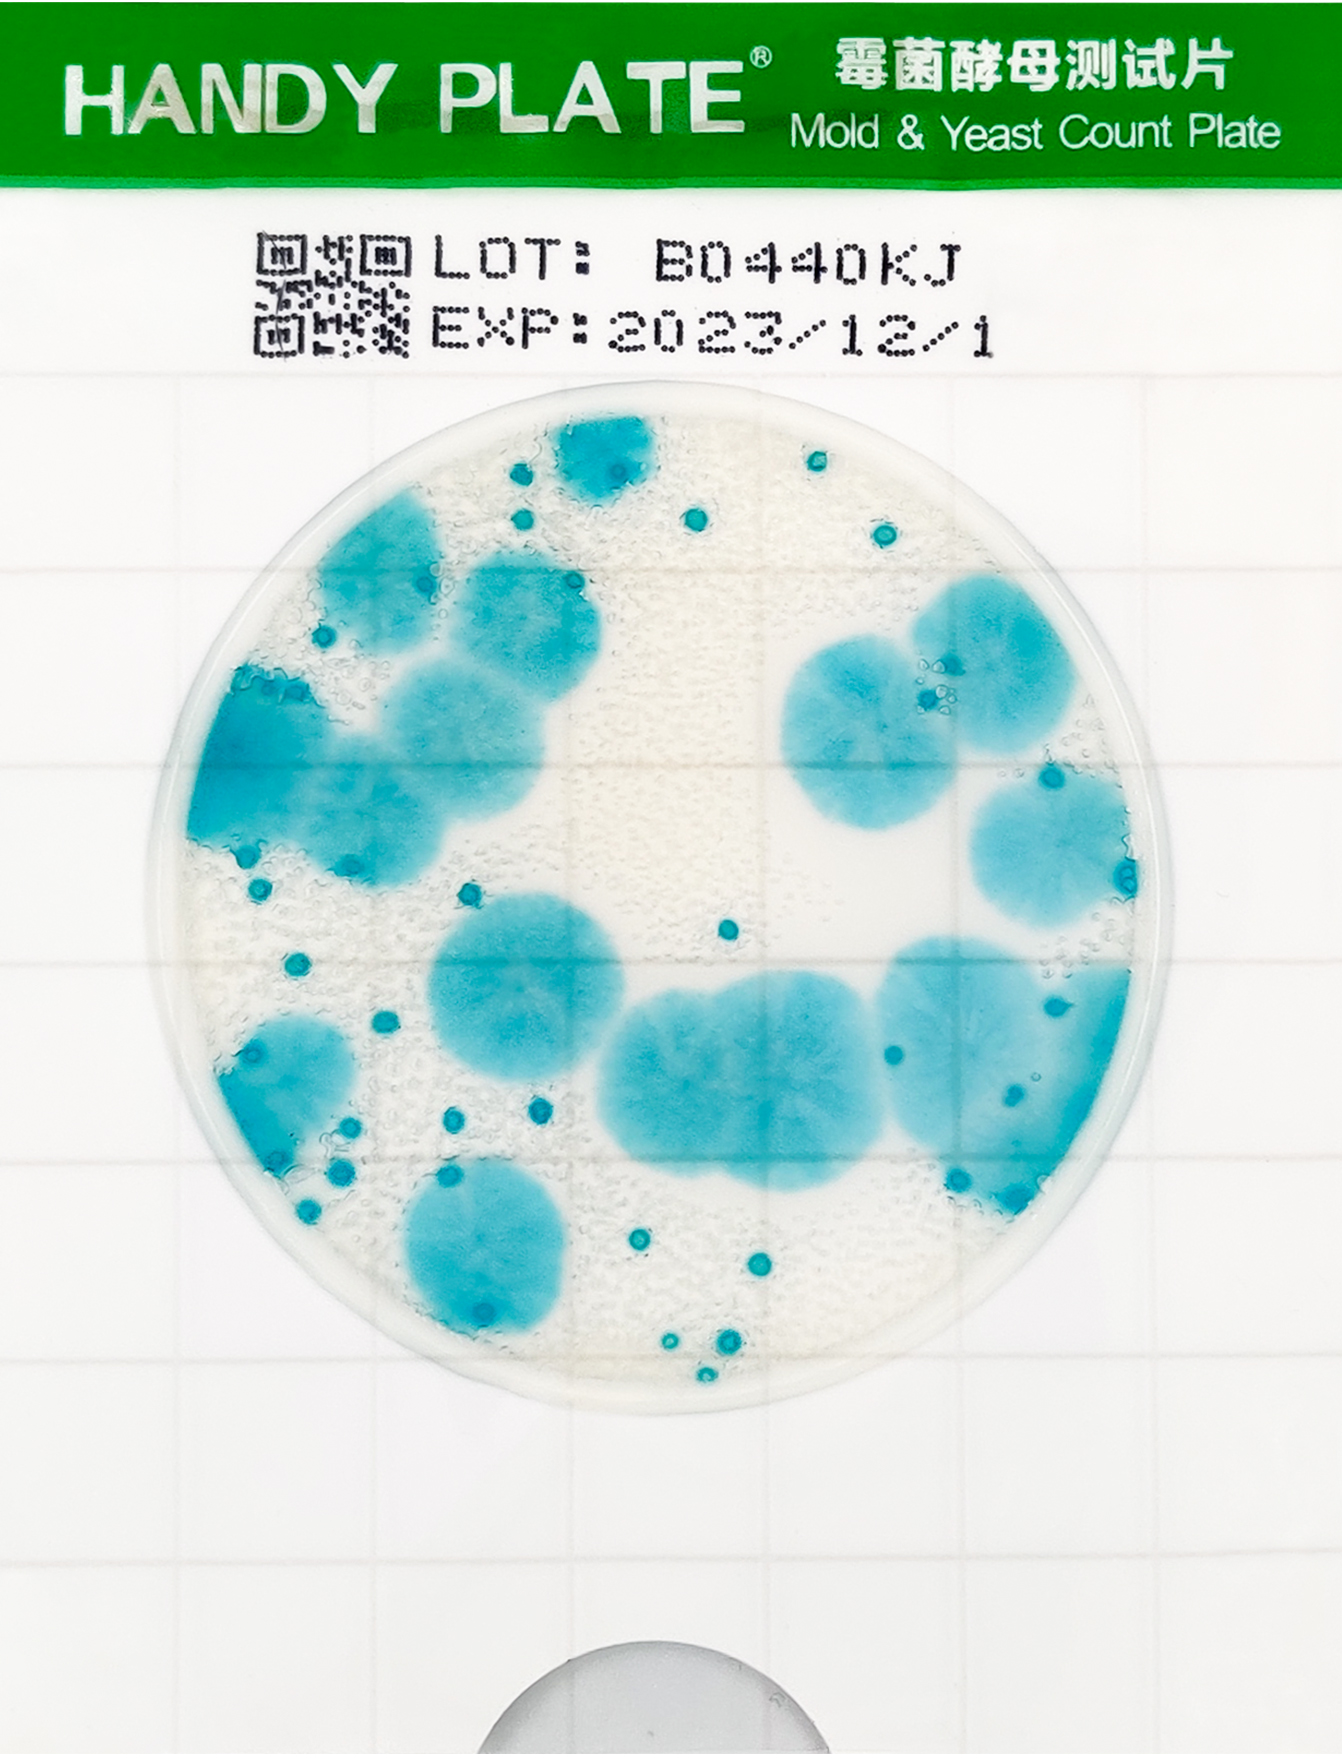 霉菌酵母检测片判读